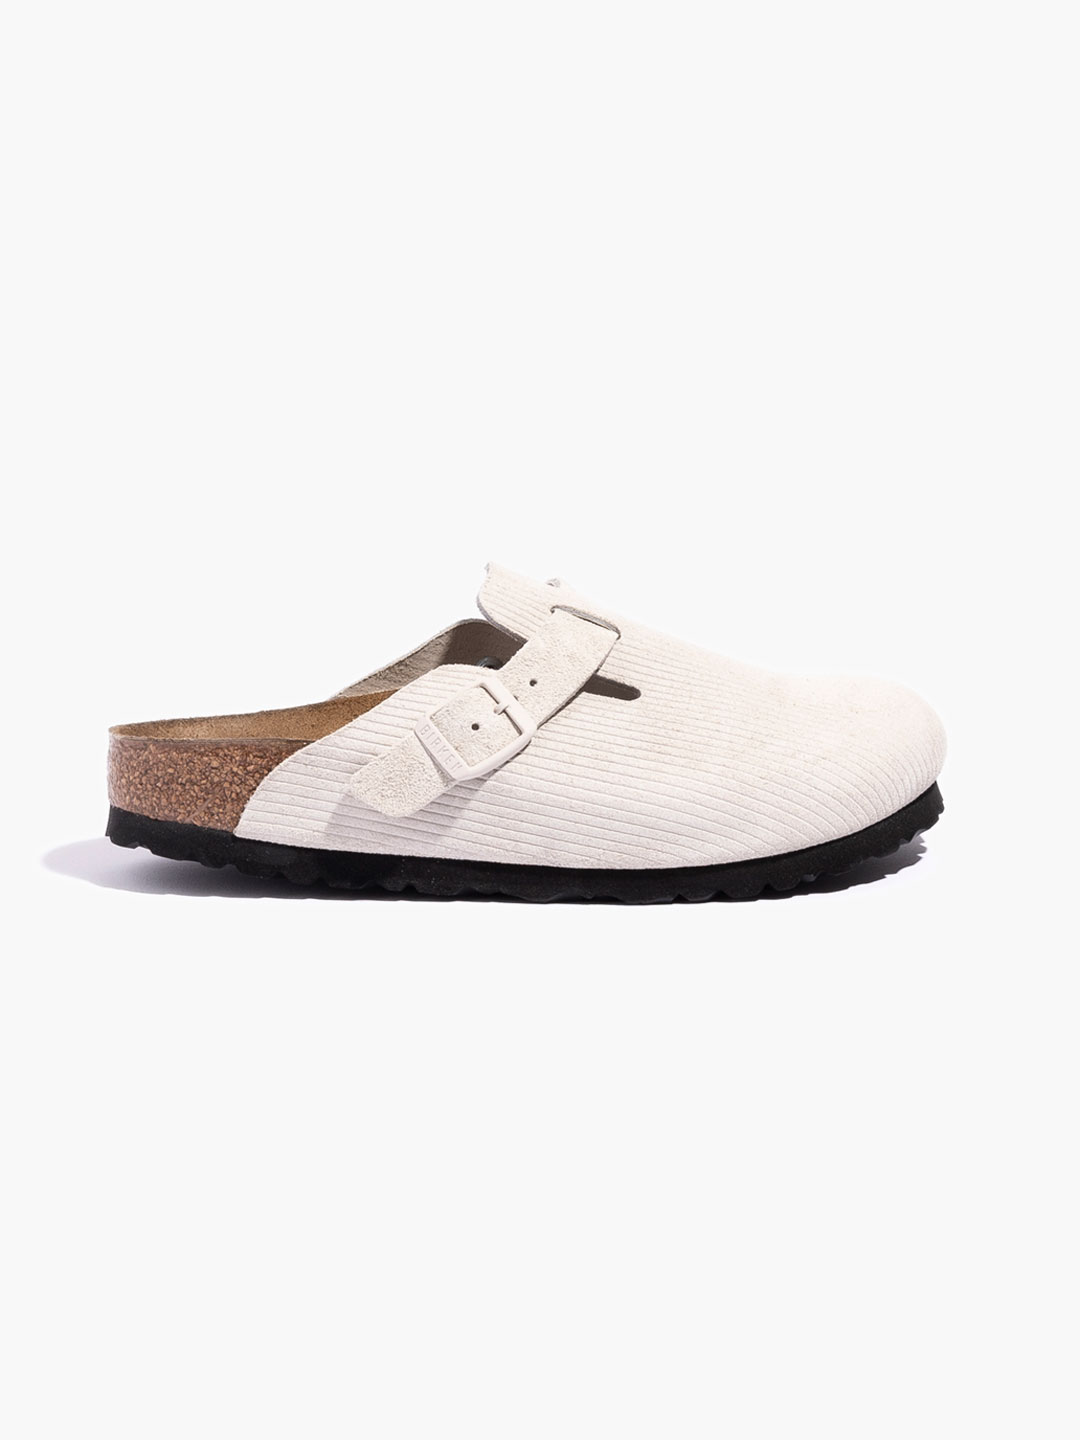 Boston Corduroy Sandals - White